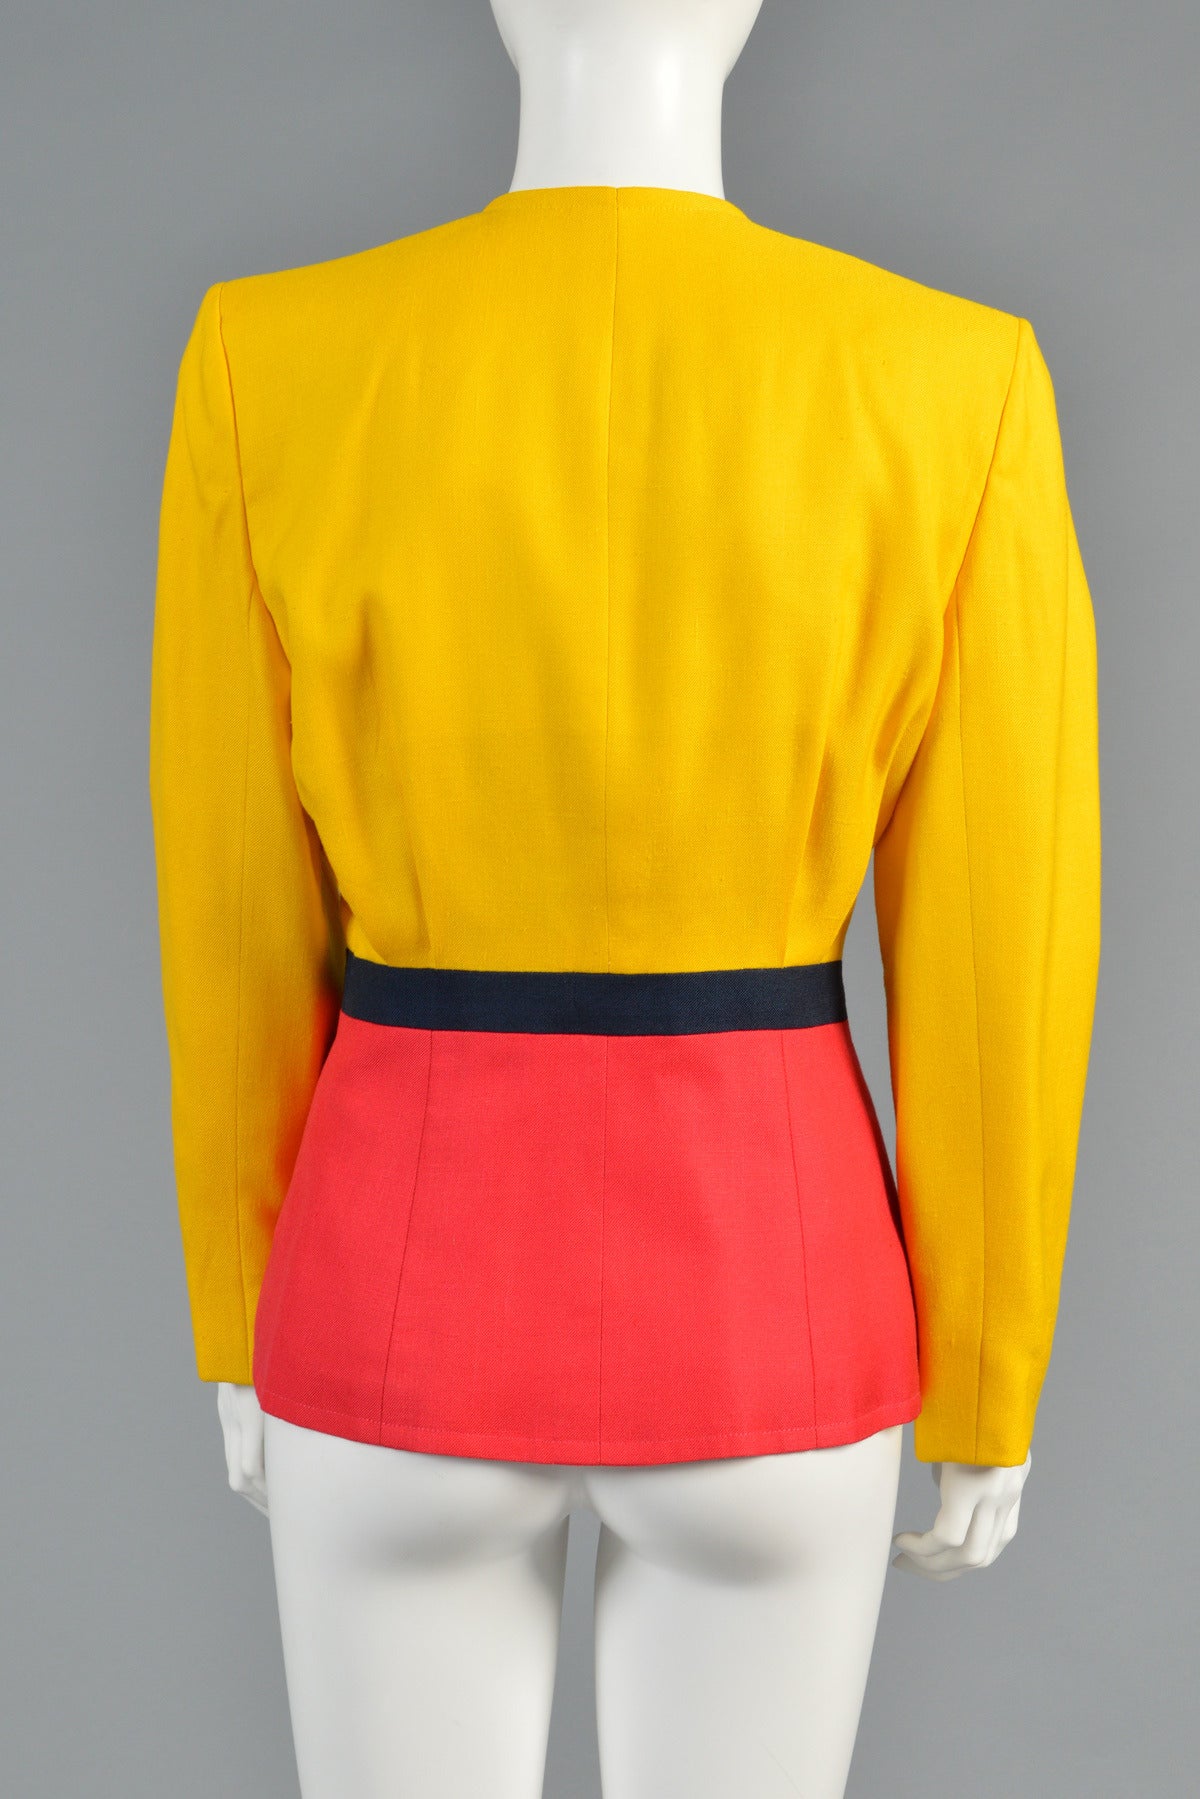 1989 Oscar de la Renta for Pierre Balmain Haute Couture Colorblocked Jacket For Sale 2